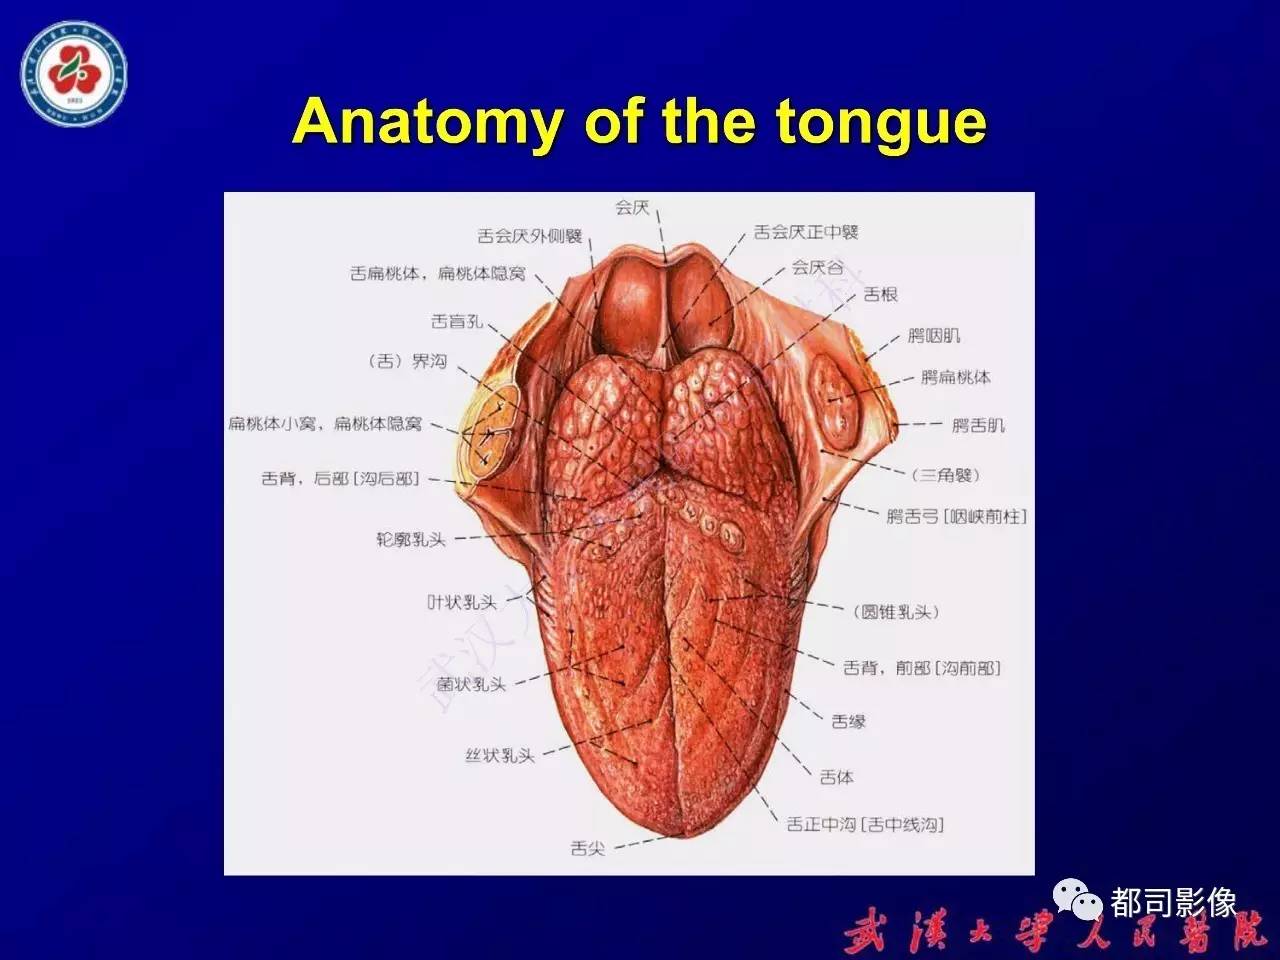 舌部常见病变及鉴别诊断